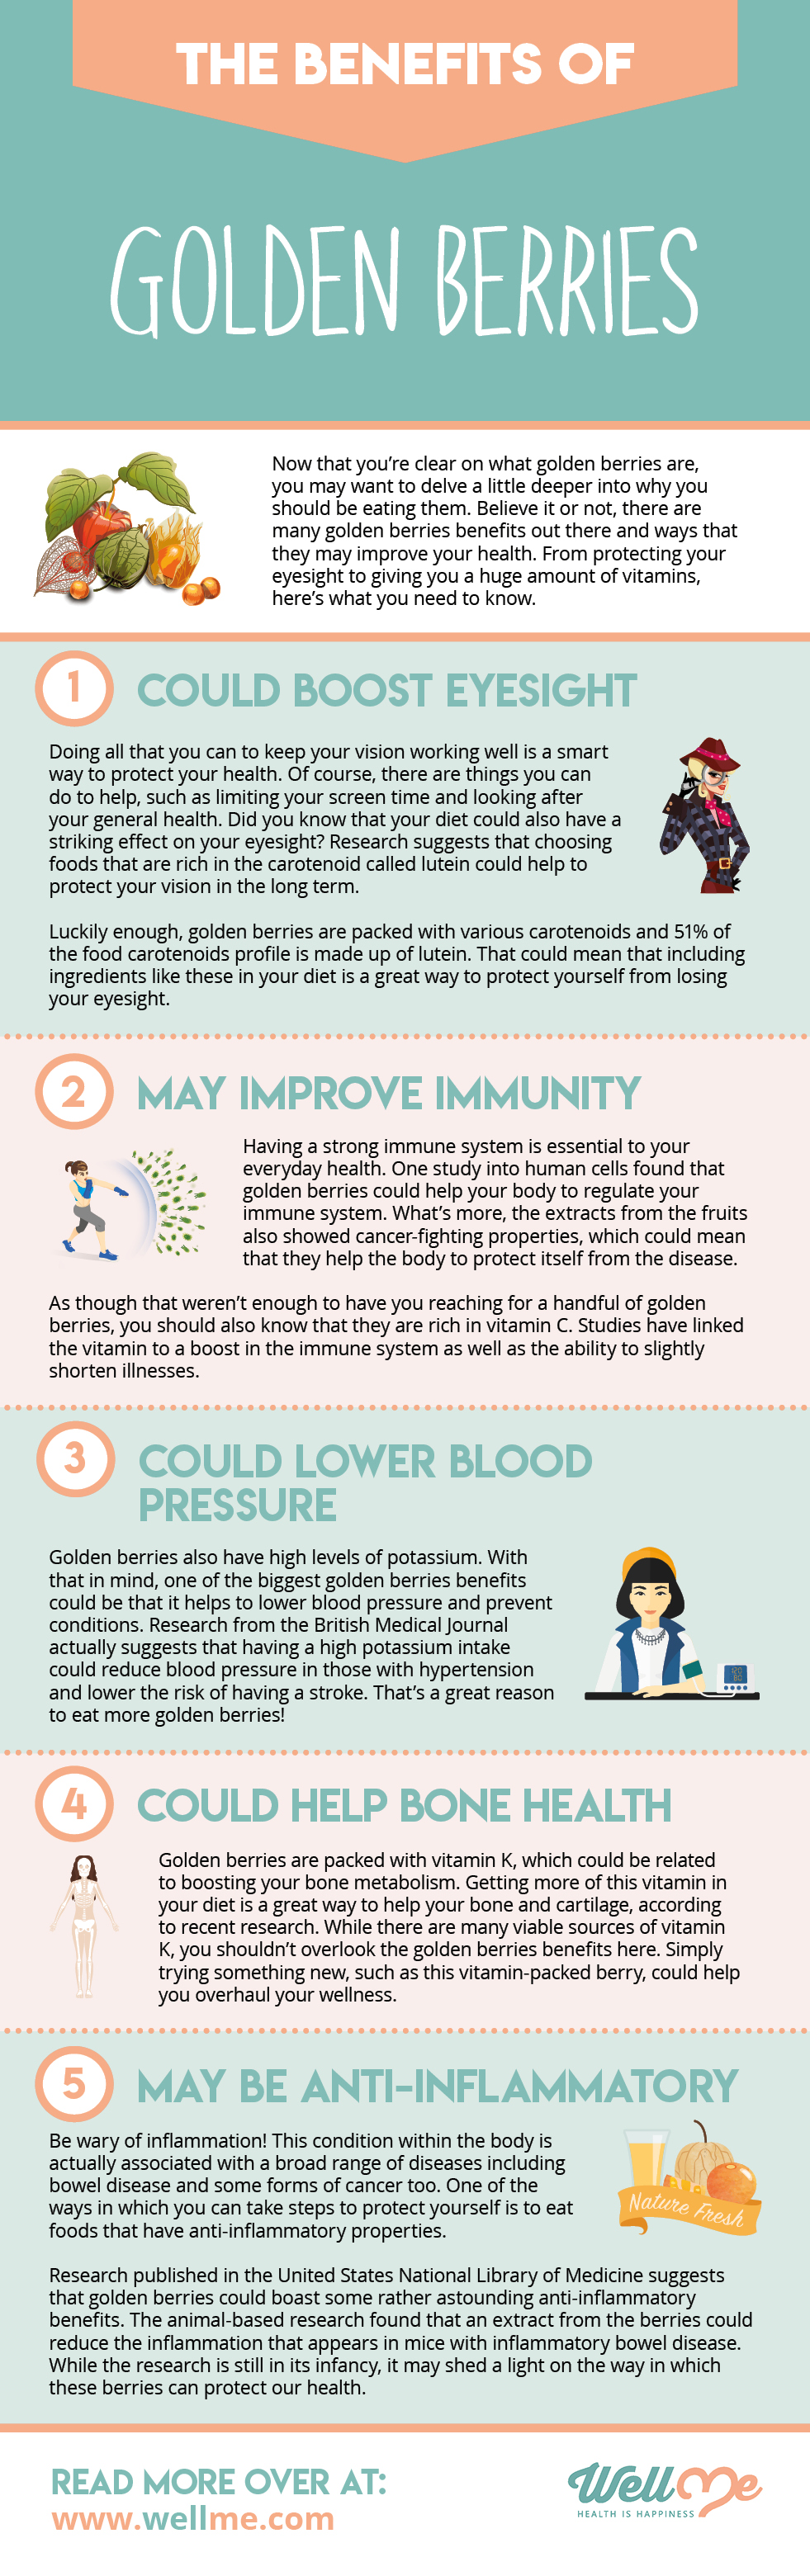 The Benefits of Golden Berries infographic